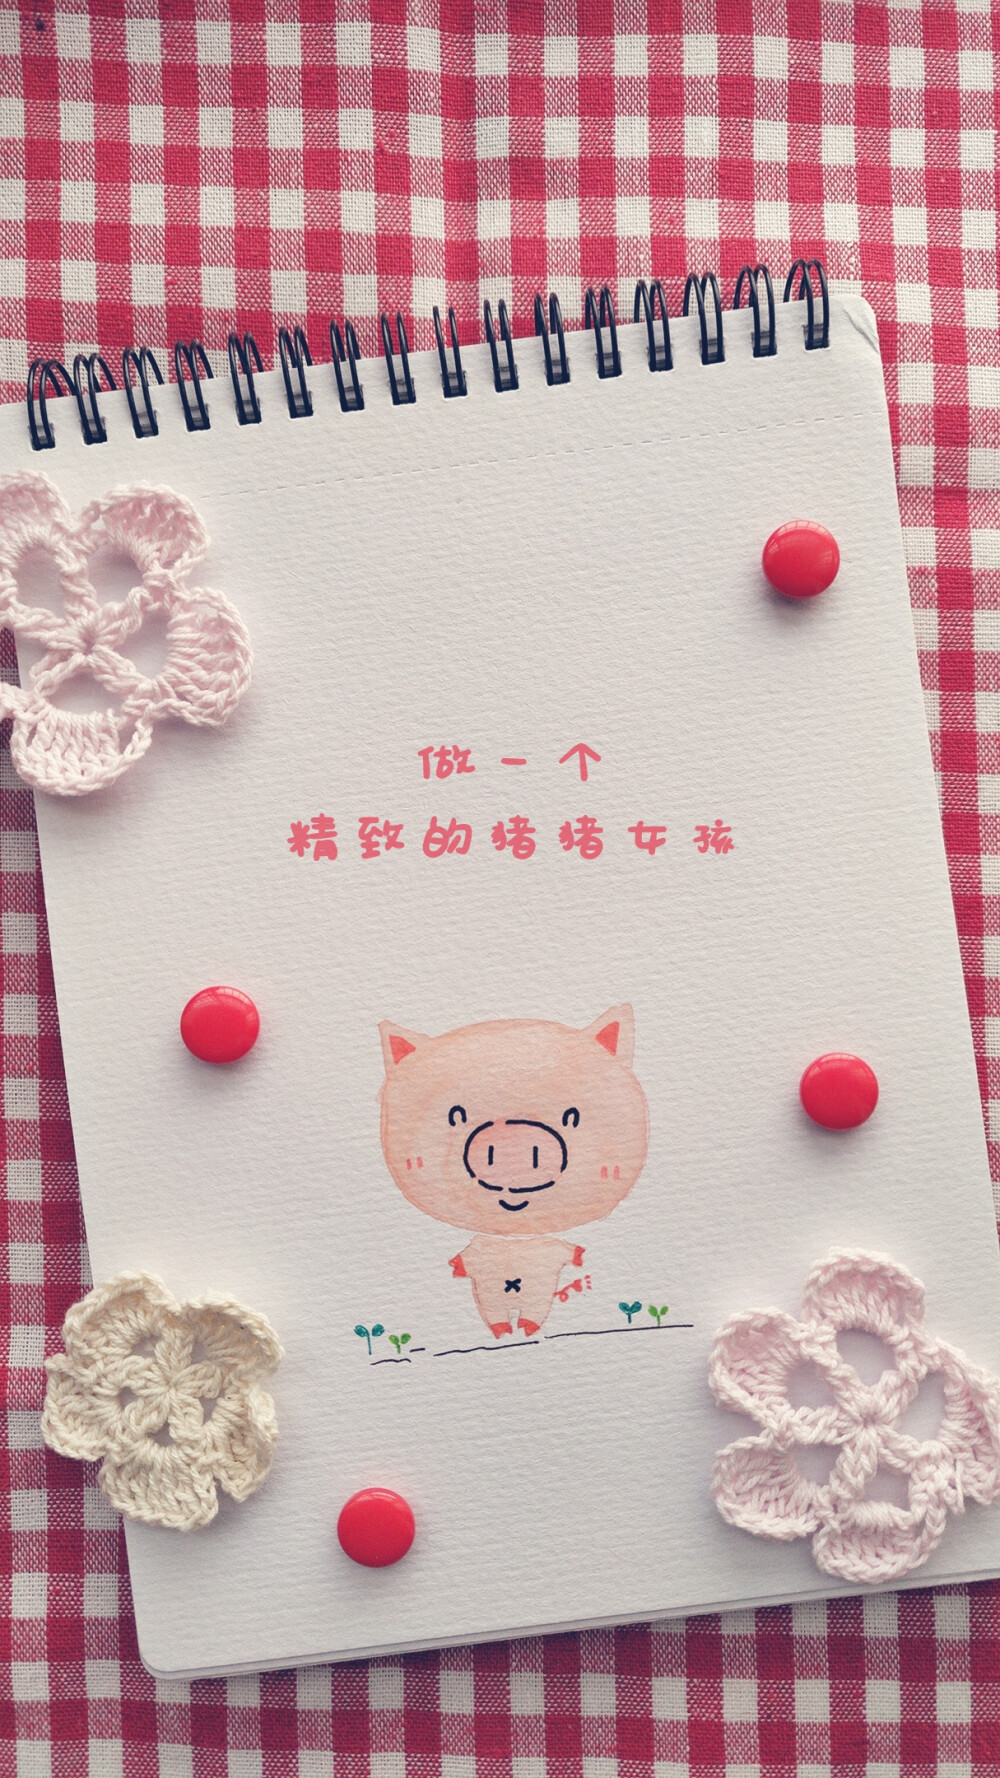 猪猪 水彩 新年 2019 清新 可爱 唯美 手机壁纸 励志 欢迎关注公众号《懒生活slow》